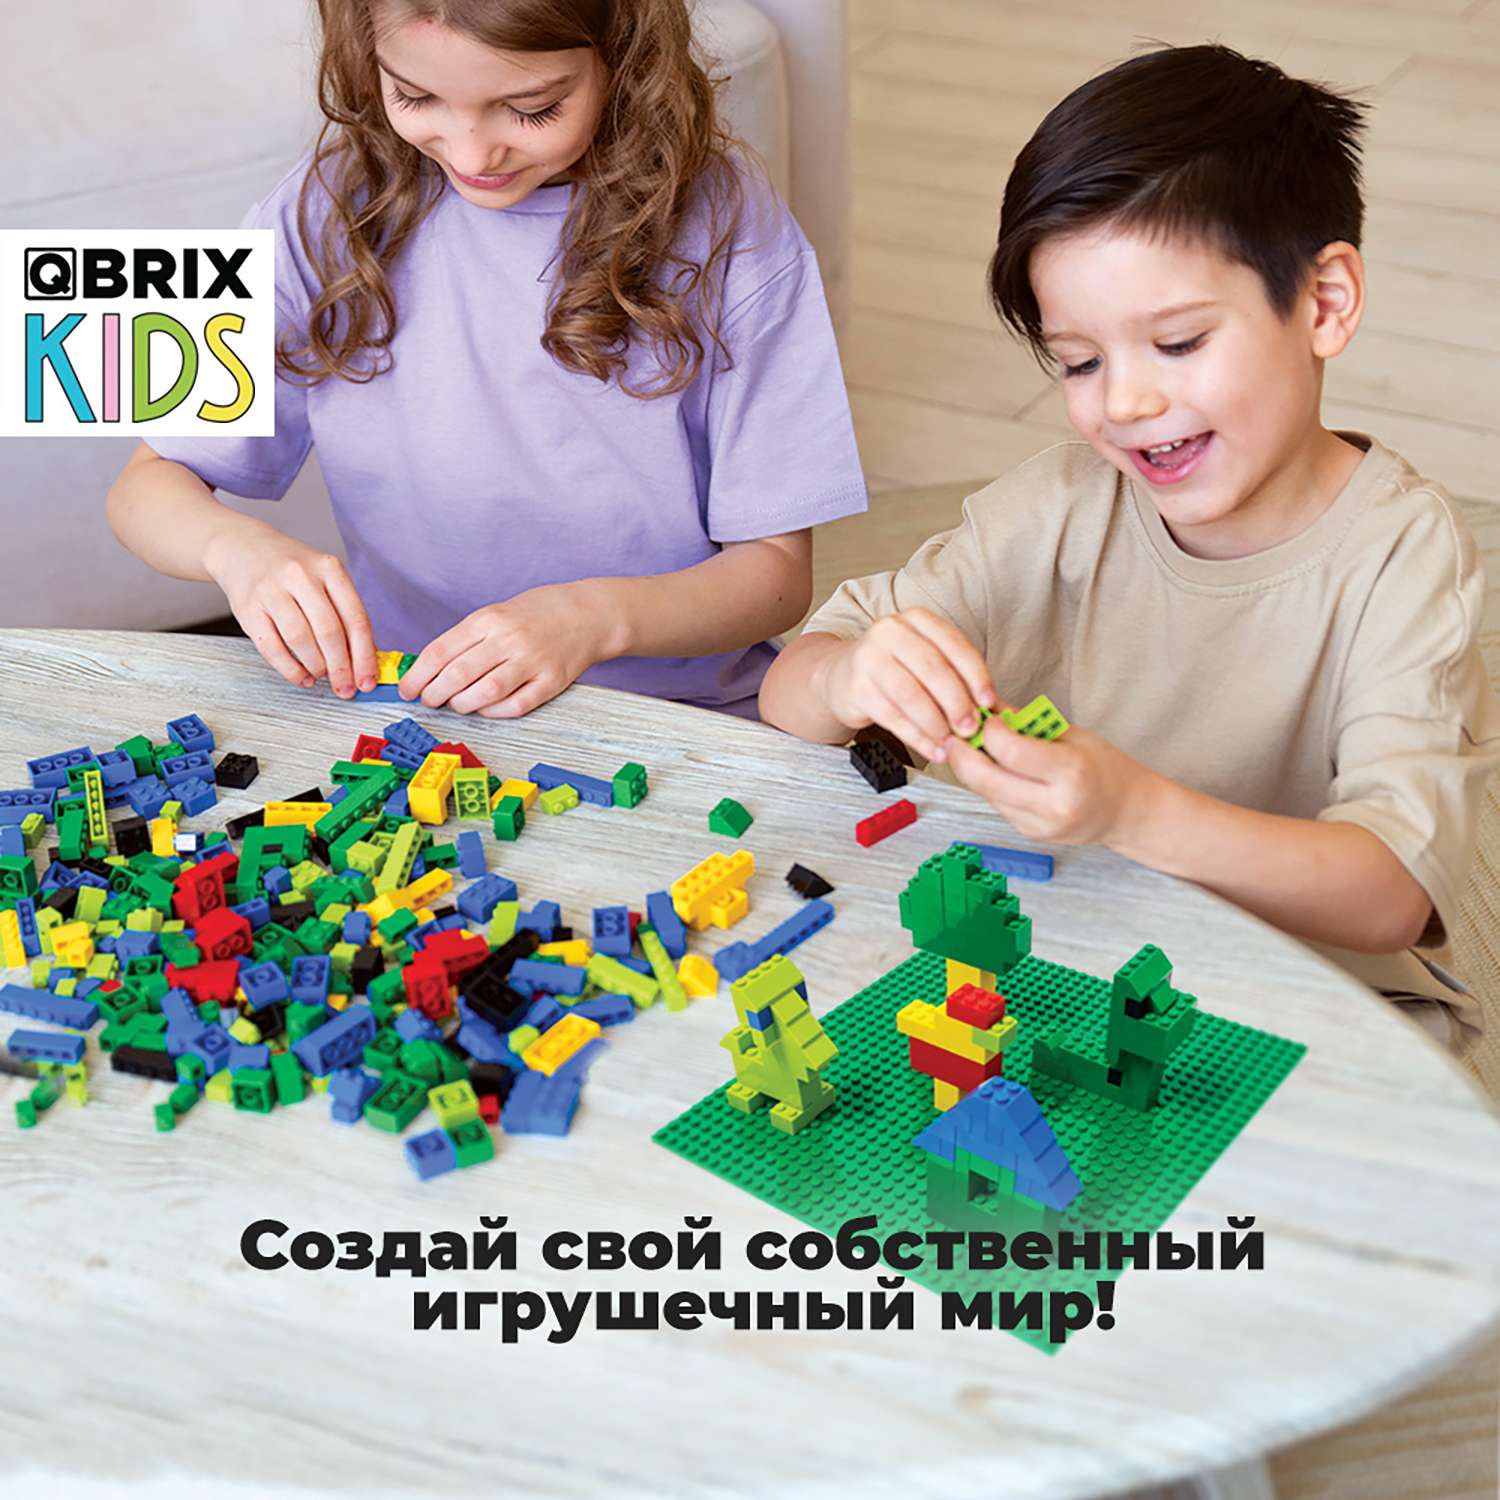 Конструктор Qbrix Kids Classic 30010 - фото 5